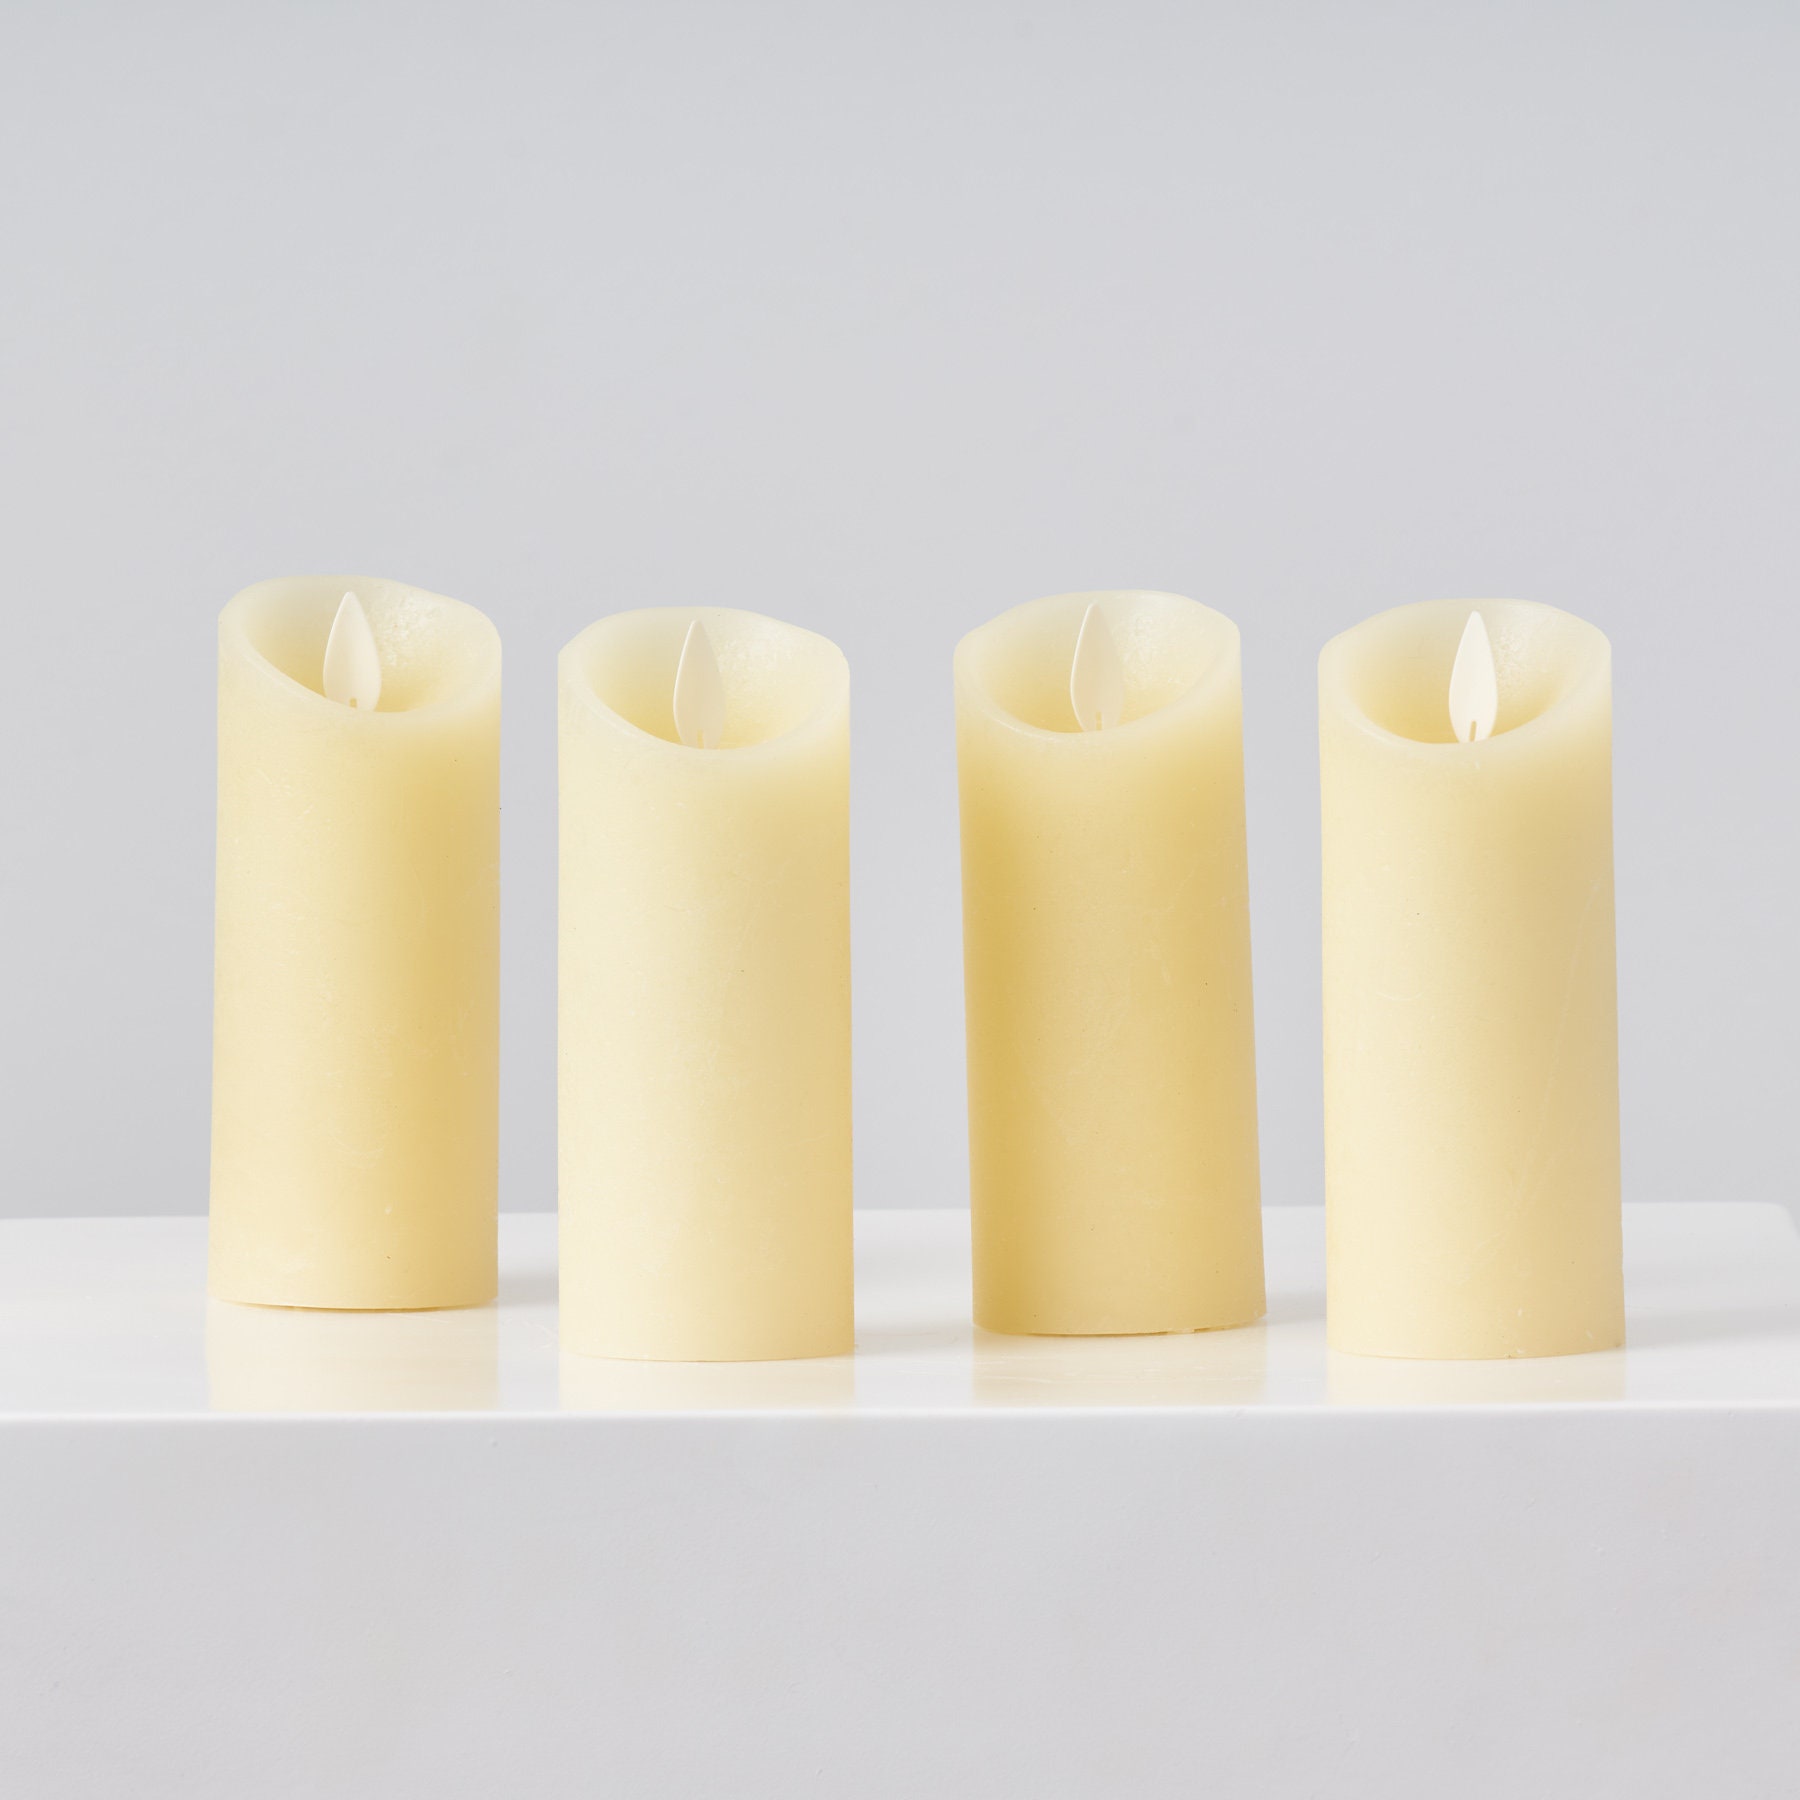 Paquet de 12 bougies chauffe-plat LED sans flamme alimentées par batterie